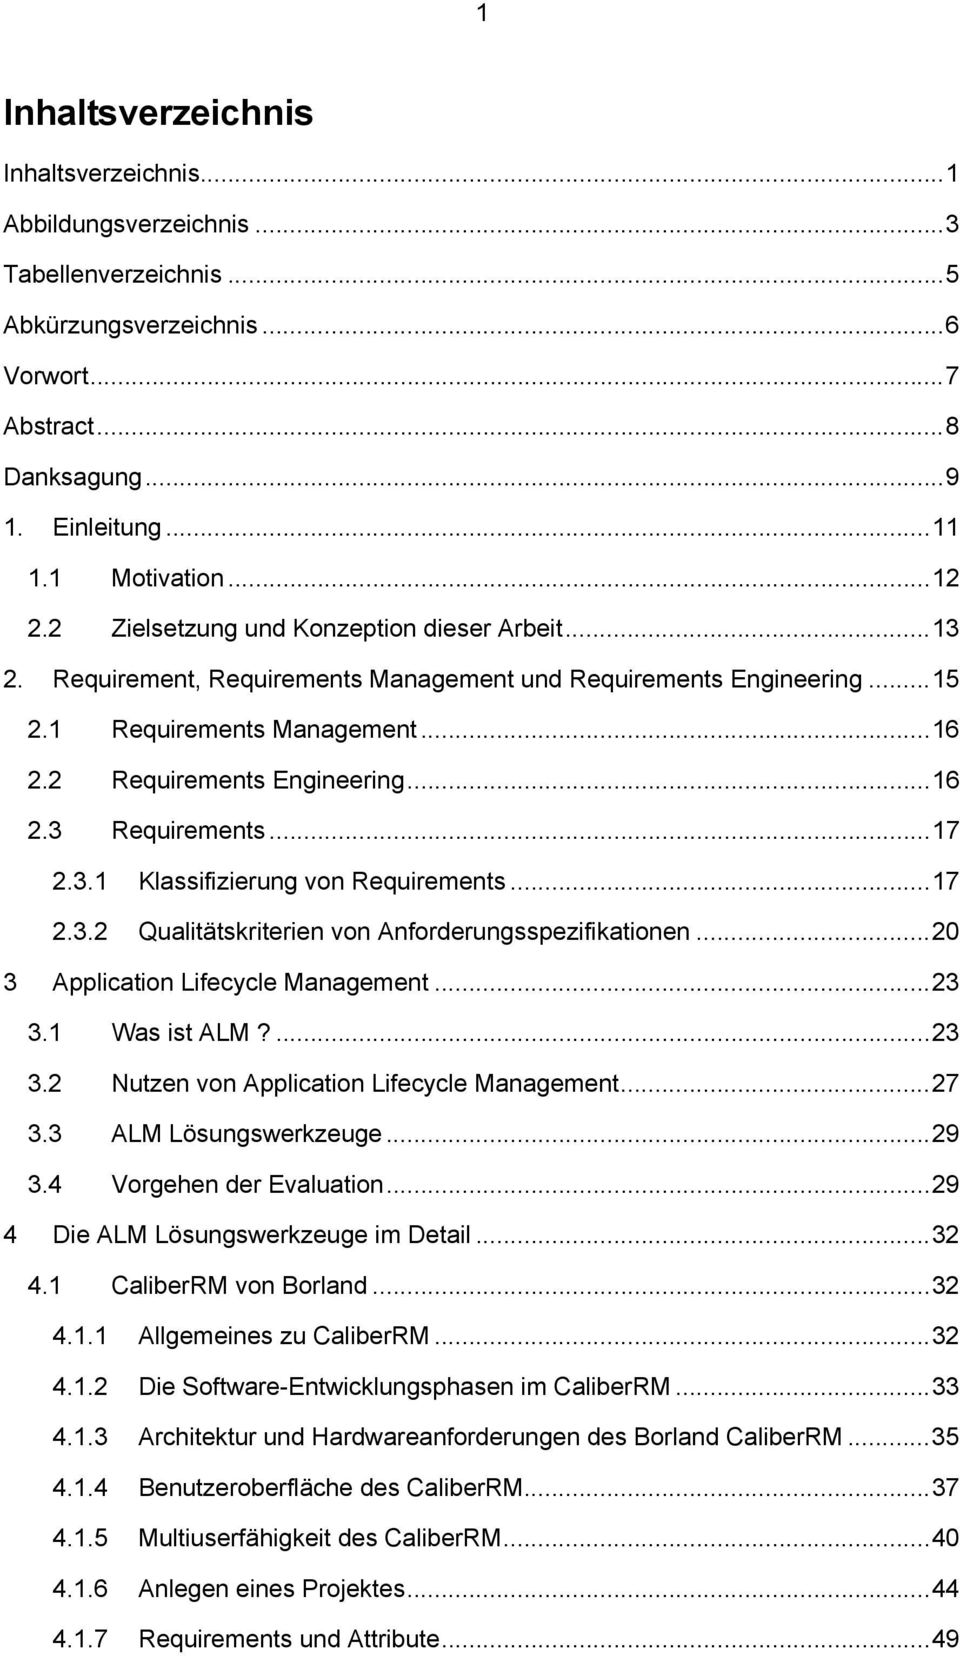 ..17 2.3.1 Klassifizierung von Requirements...17 2.3.2 Qualitätskriterien von Anforderungsspezifikationen...20 3 Application Lifecycle Management...23 3.1 Was ist ALM?...23 3.2 Nutzen von Application Lifecycle Management.